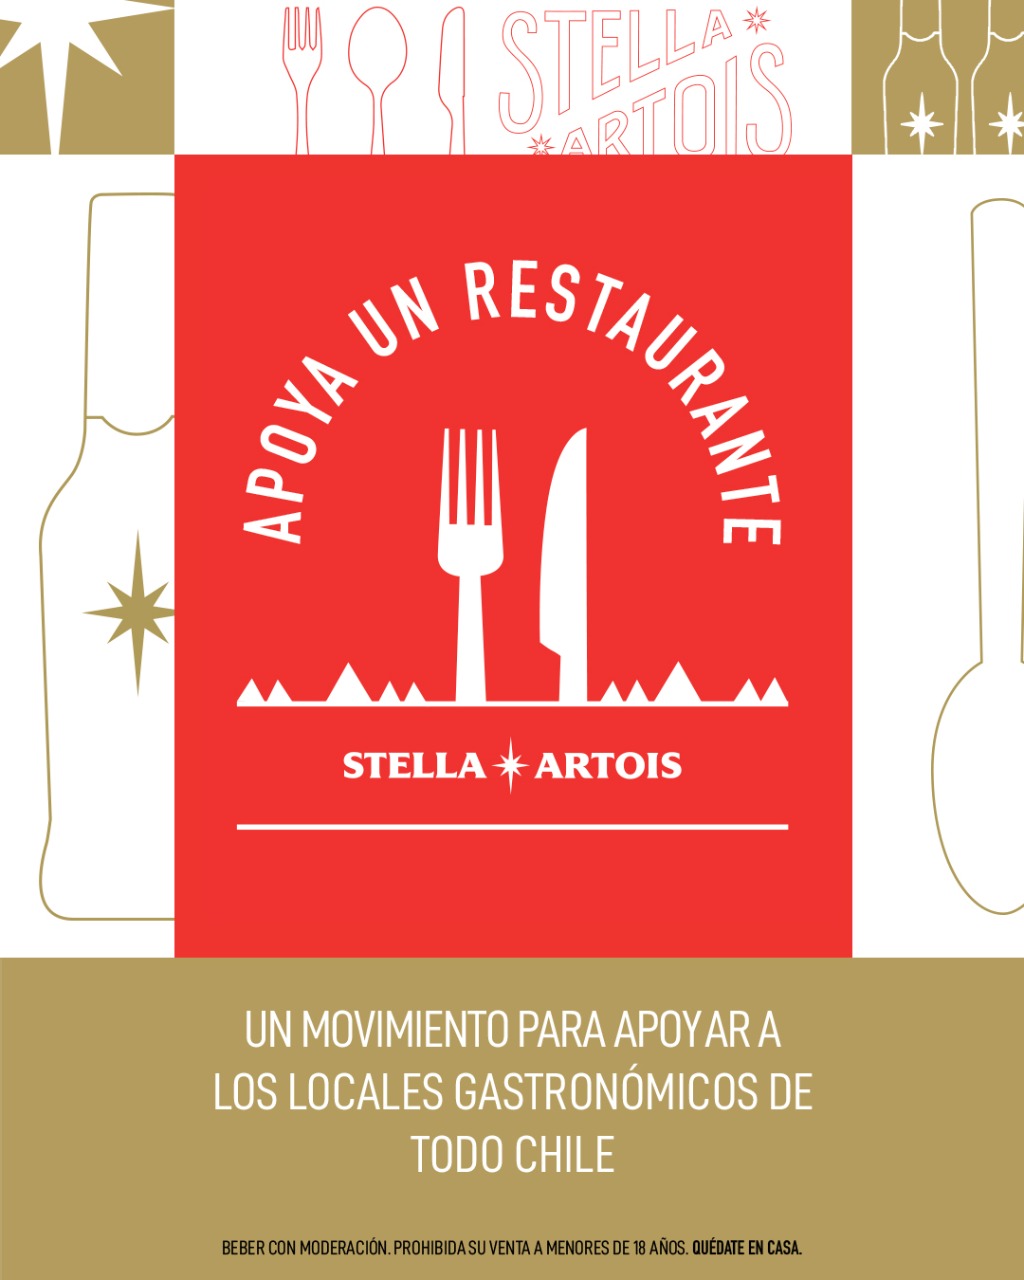 “Apoya a un restaurante”: Stella Artois promueve campaña para ayudar al sector gastronómico afectado por la crisis actual